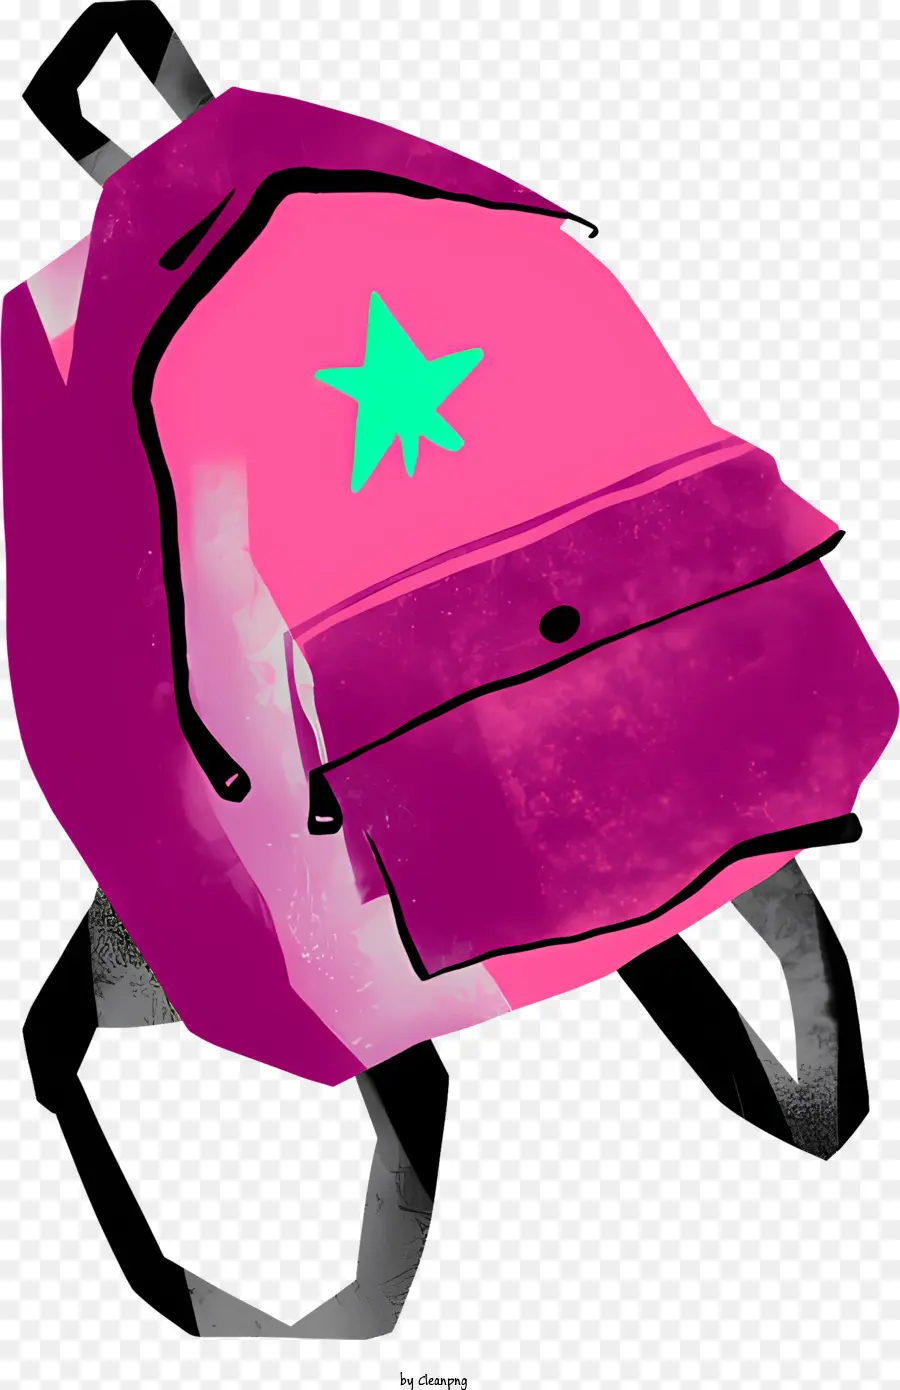 Backpack màu xanh lá cây thiết kế ngôi sao hai dây đeo bên mở ba lô - Ba lô màu hồng với ngôi sao xanh, hai dây đai, hai túi bên, mở với các vật phẩm bên trong